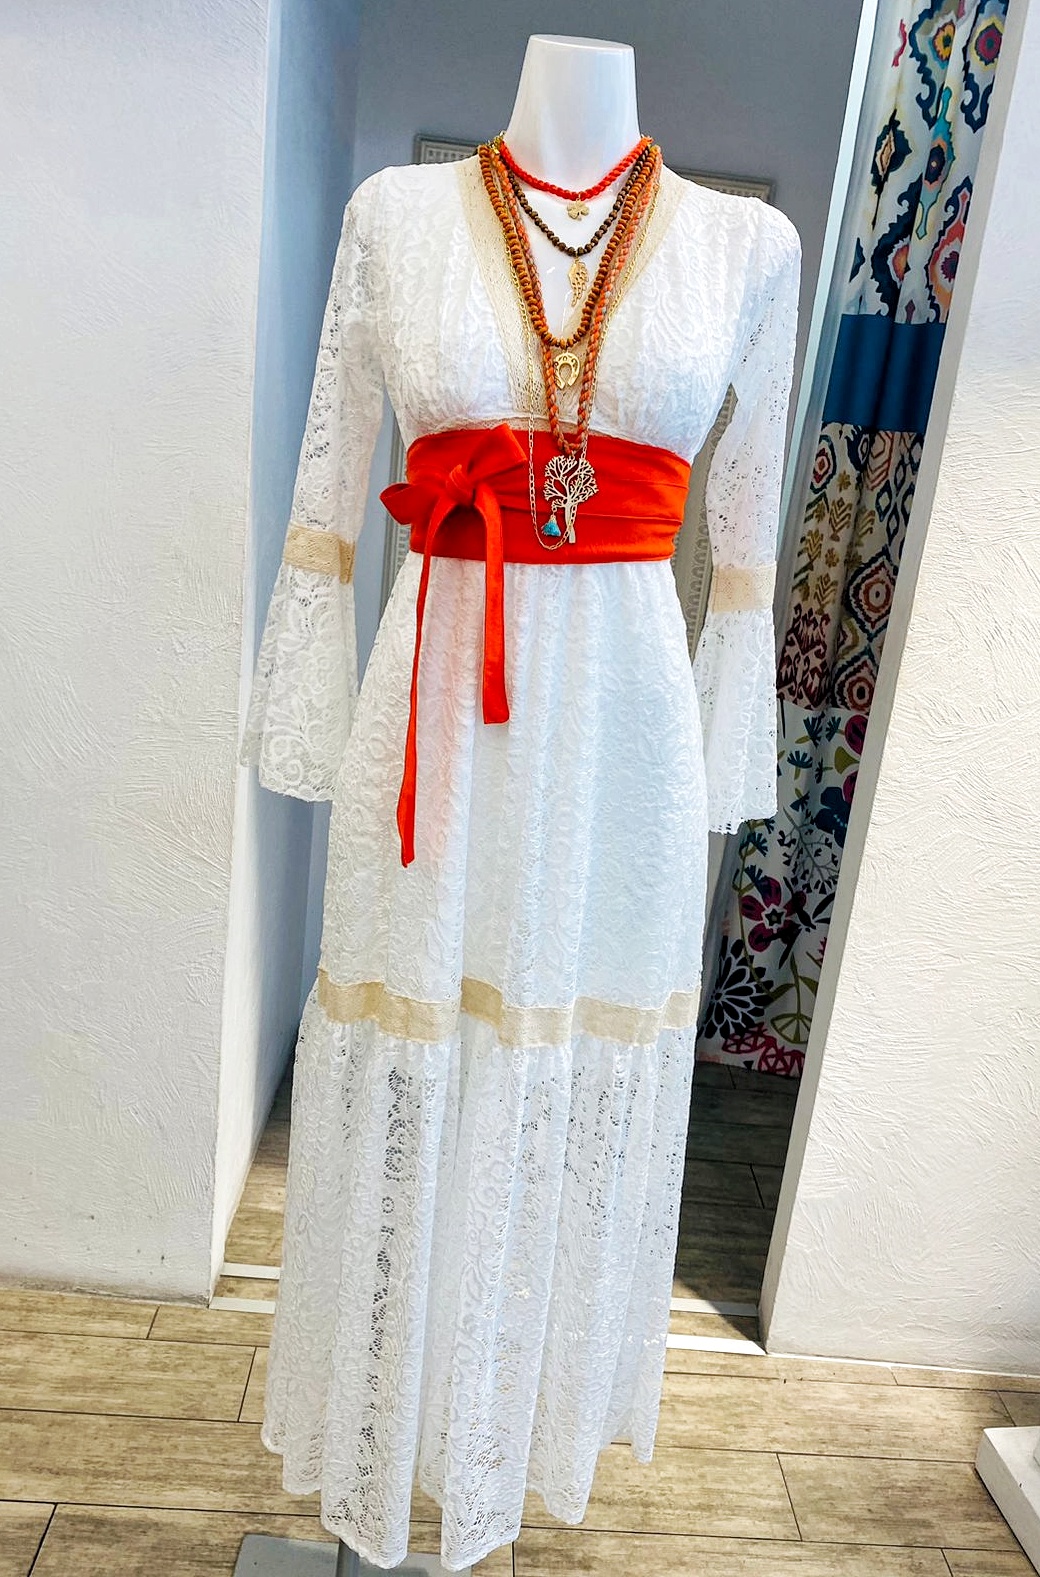 Vestido Dora Campana blanco encaje - Tienda Mexicana